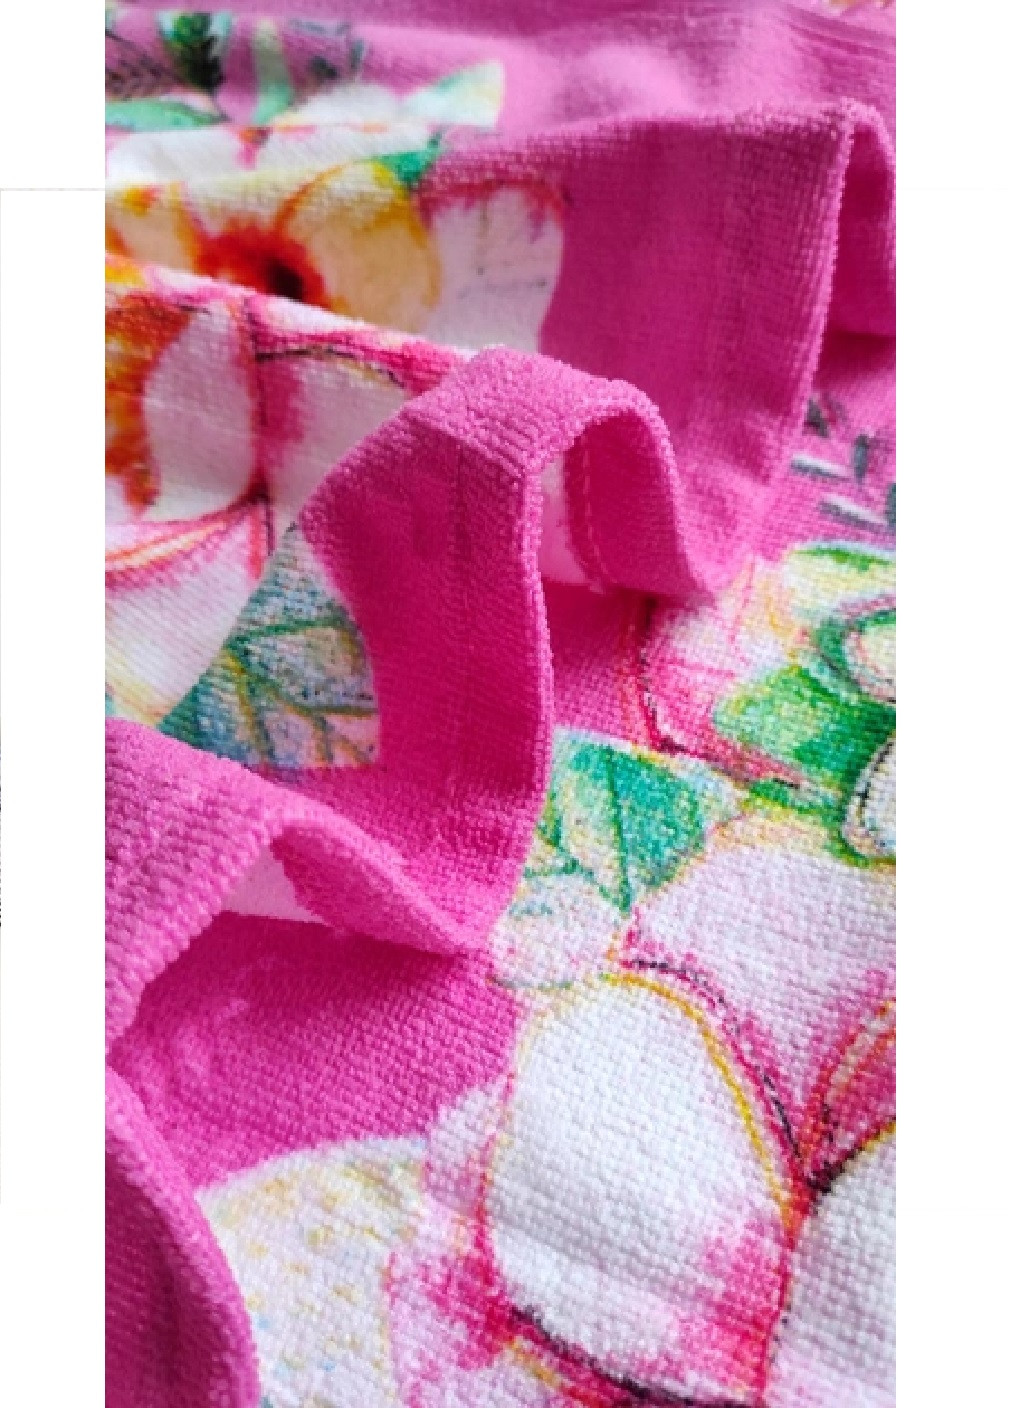 Unbranded детское пляжное полотенце пончо с капюшоном микрофибра для ванной бассейна пляжа 60х60 см (474679-prob) единорог рисунок розовый производство -